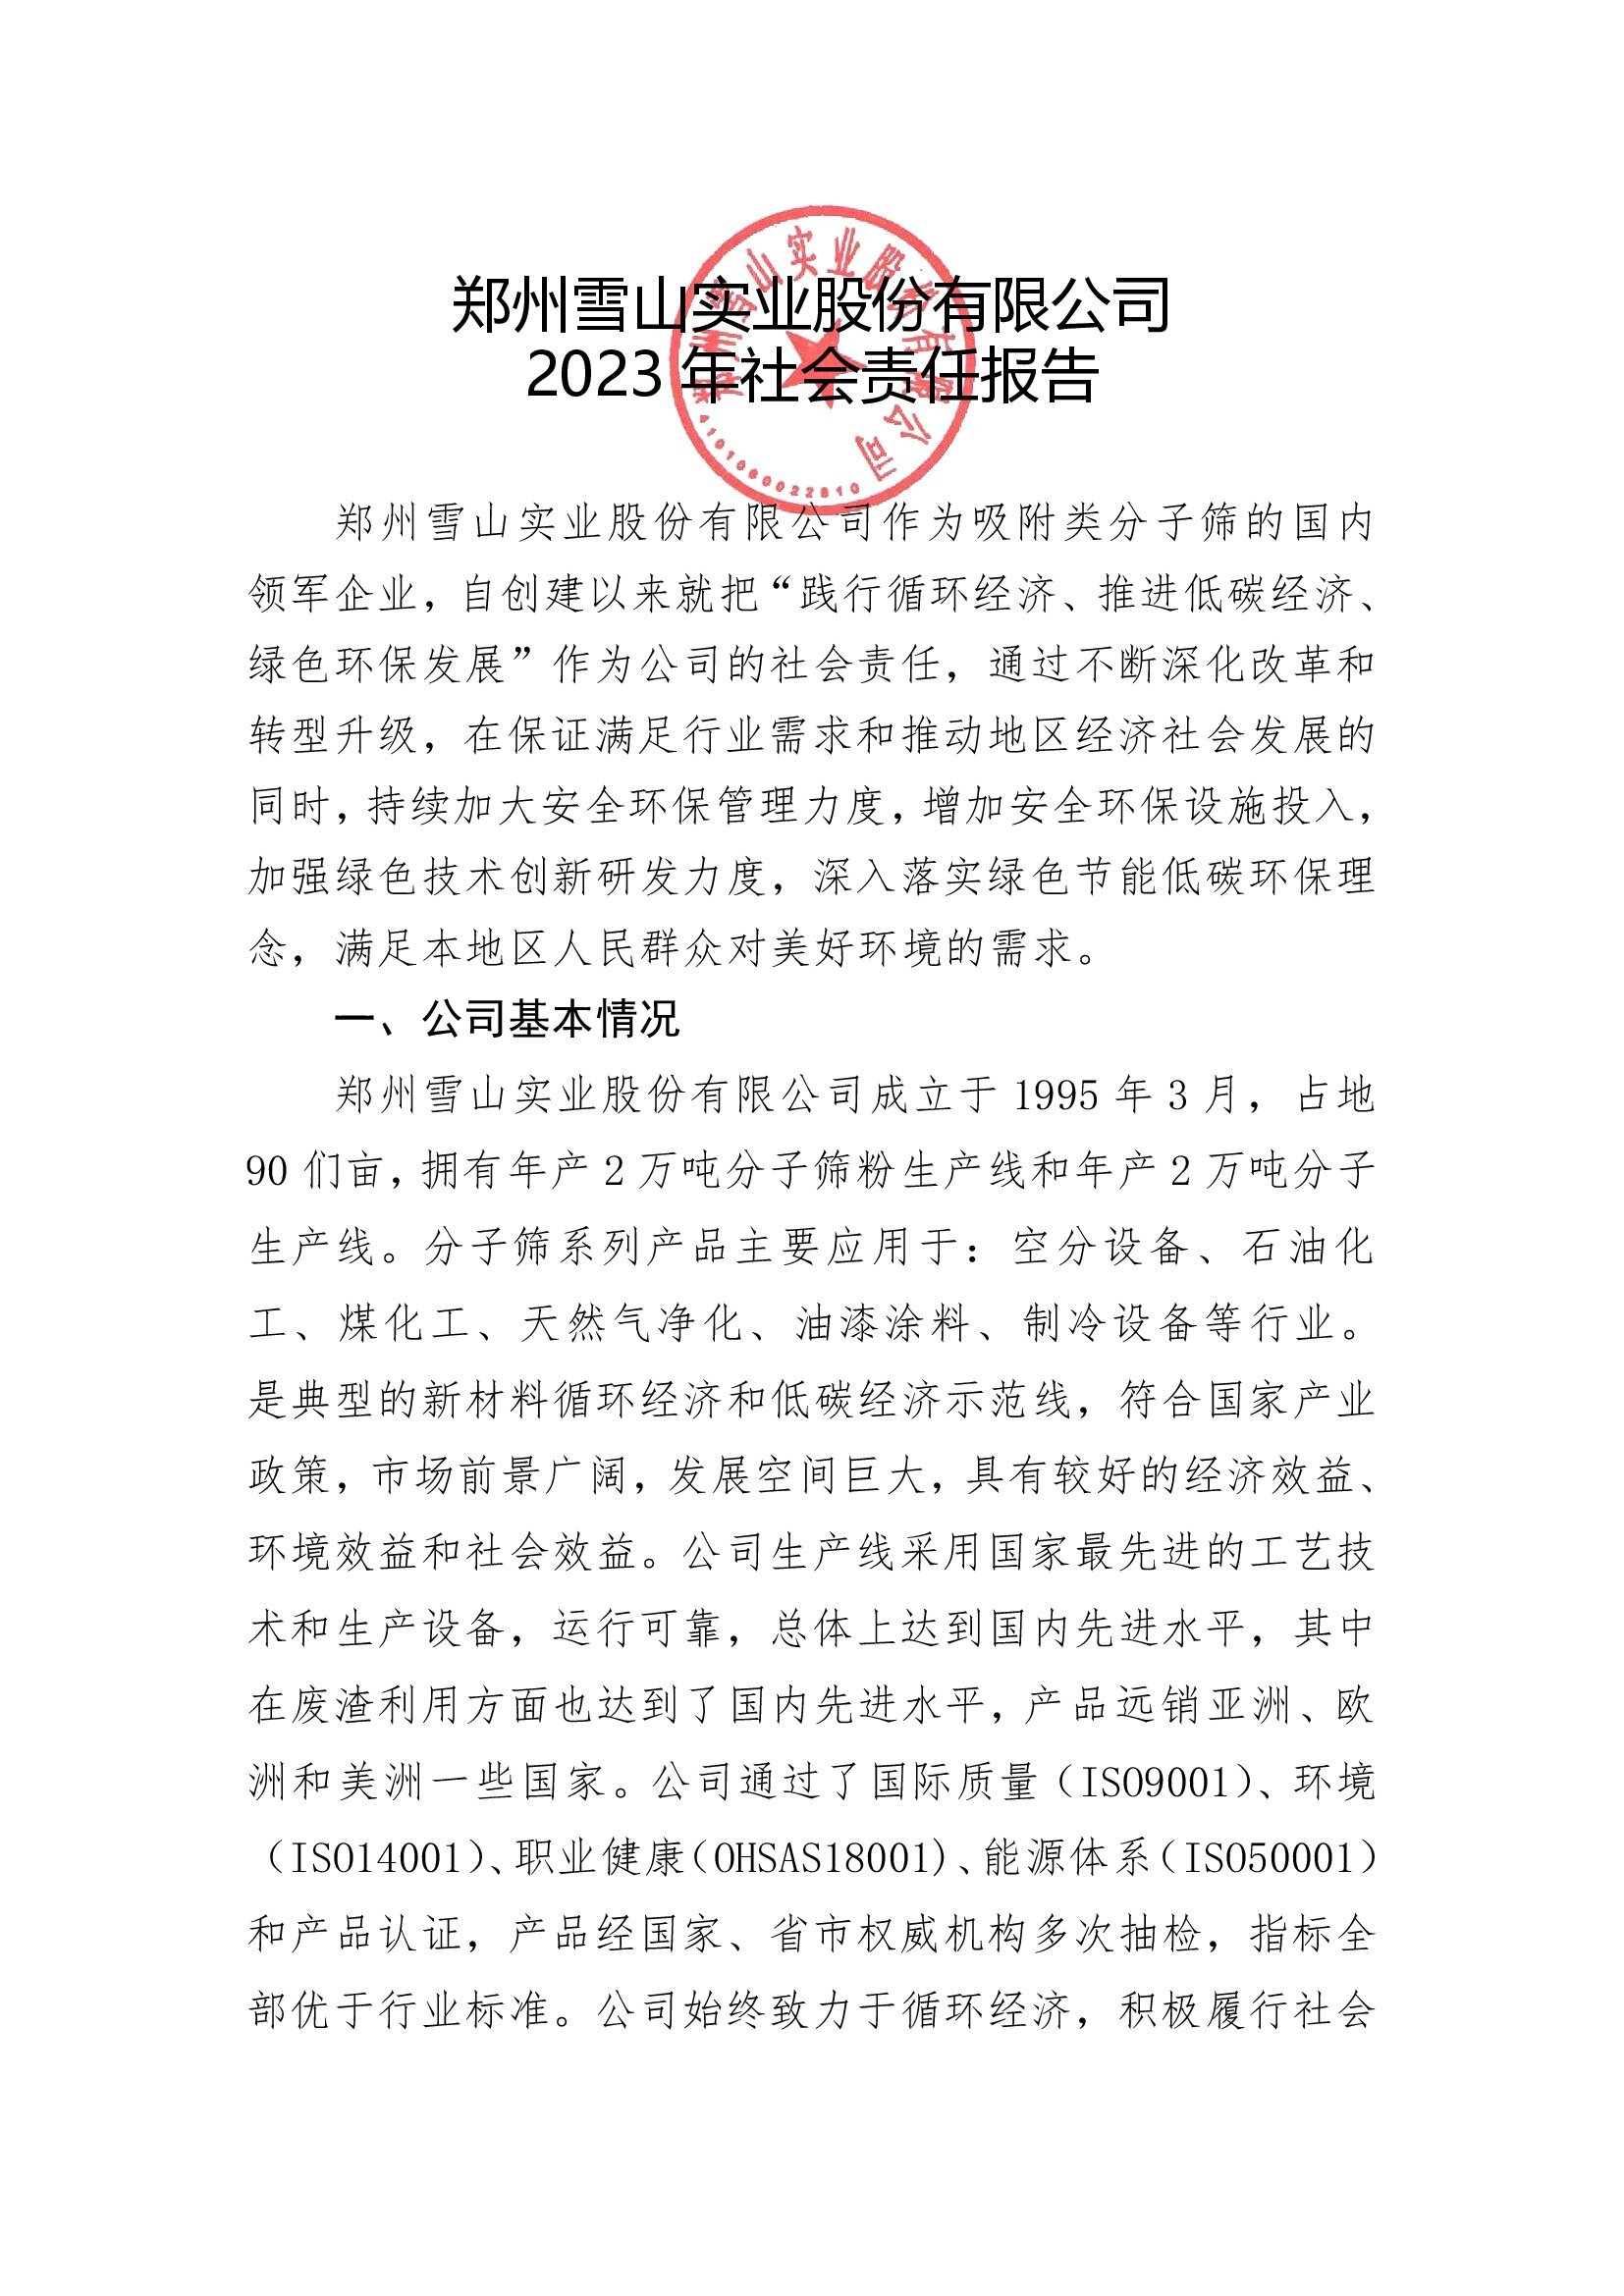 郑州雪山实业股份有限公司《2023年社会责任报告》_00001.jpg